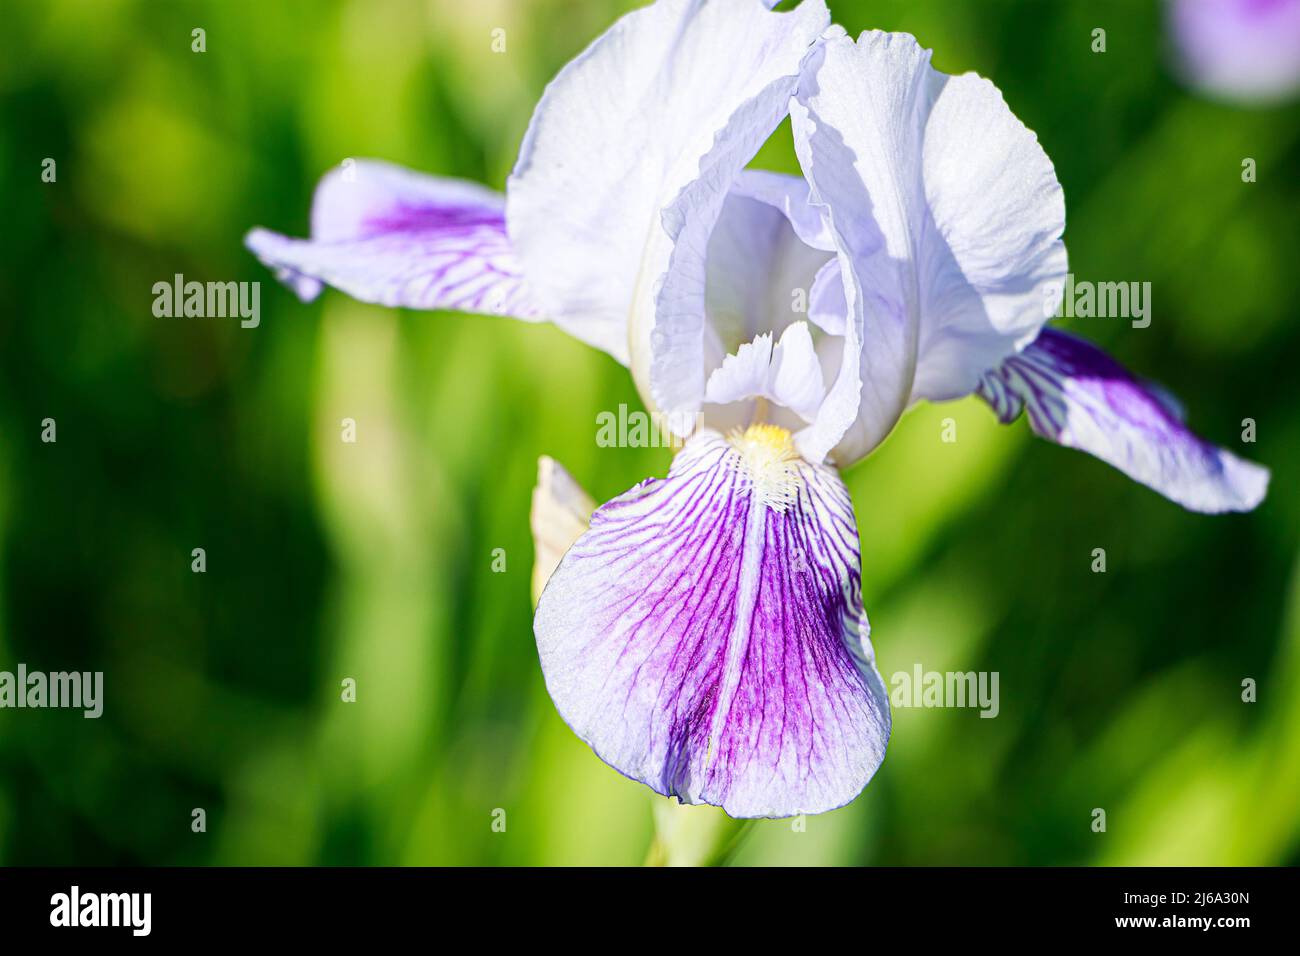 Fleurs violettes dans le jardin. Iris pétale à barbe ou barbata violet rayé. Plantes ornementales en pleine croissance. Arrière-plan naturel d'été. Banque D'Images